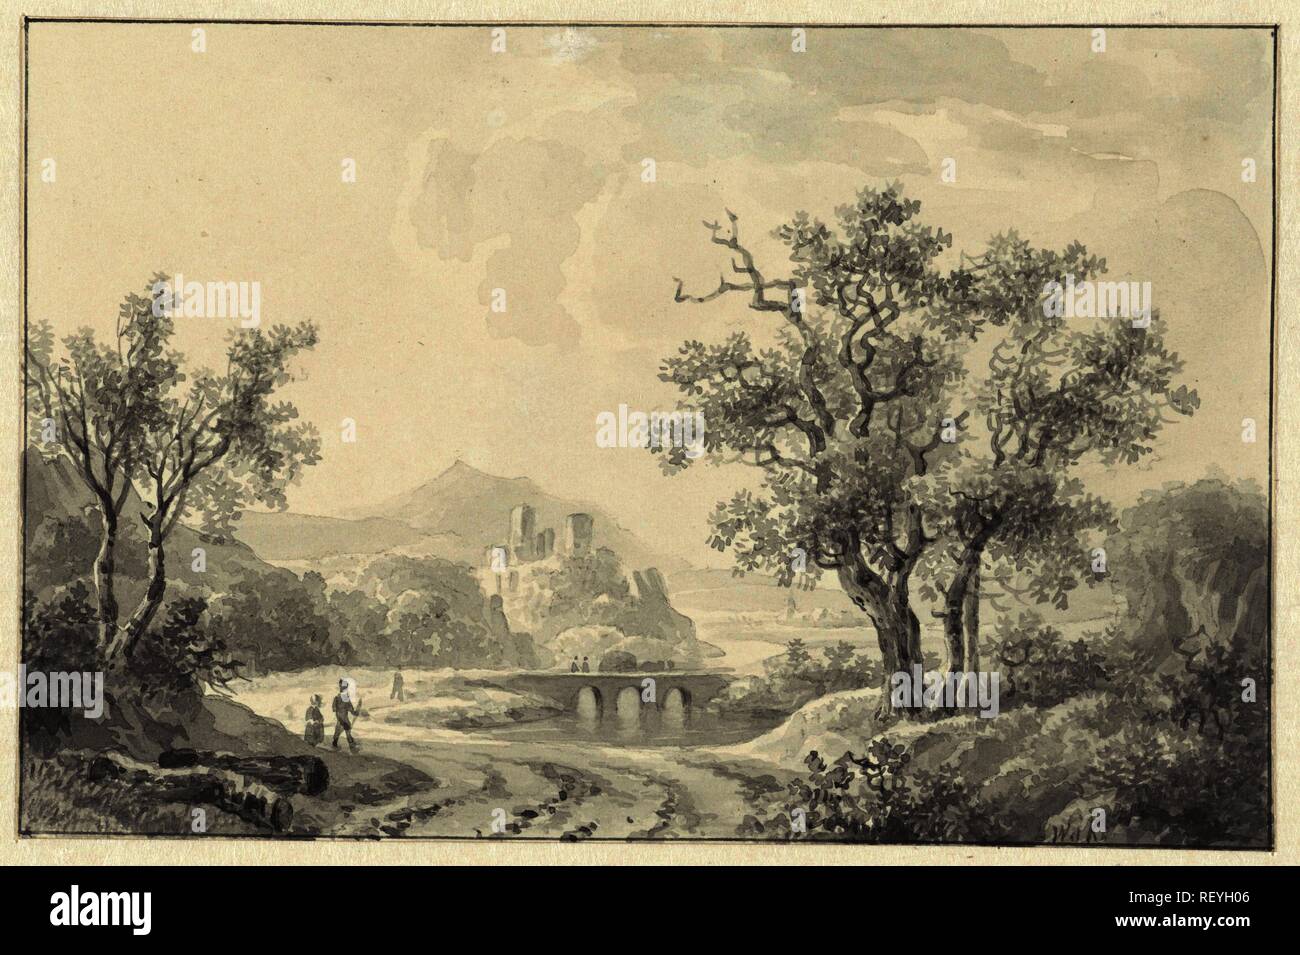 Landschaft mit Ruine in Sicht. Verfasser der Stellungnahme: Willem de Klerk. Datierung: 1810 - 1876. Maße: H 101 mm x B 154 mm. Museum: Rijksmuseum, Amsterdam. Stockfoto